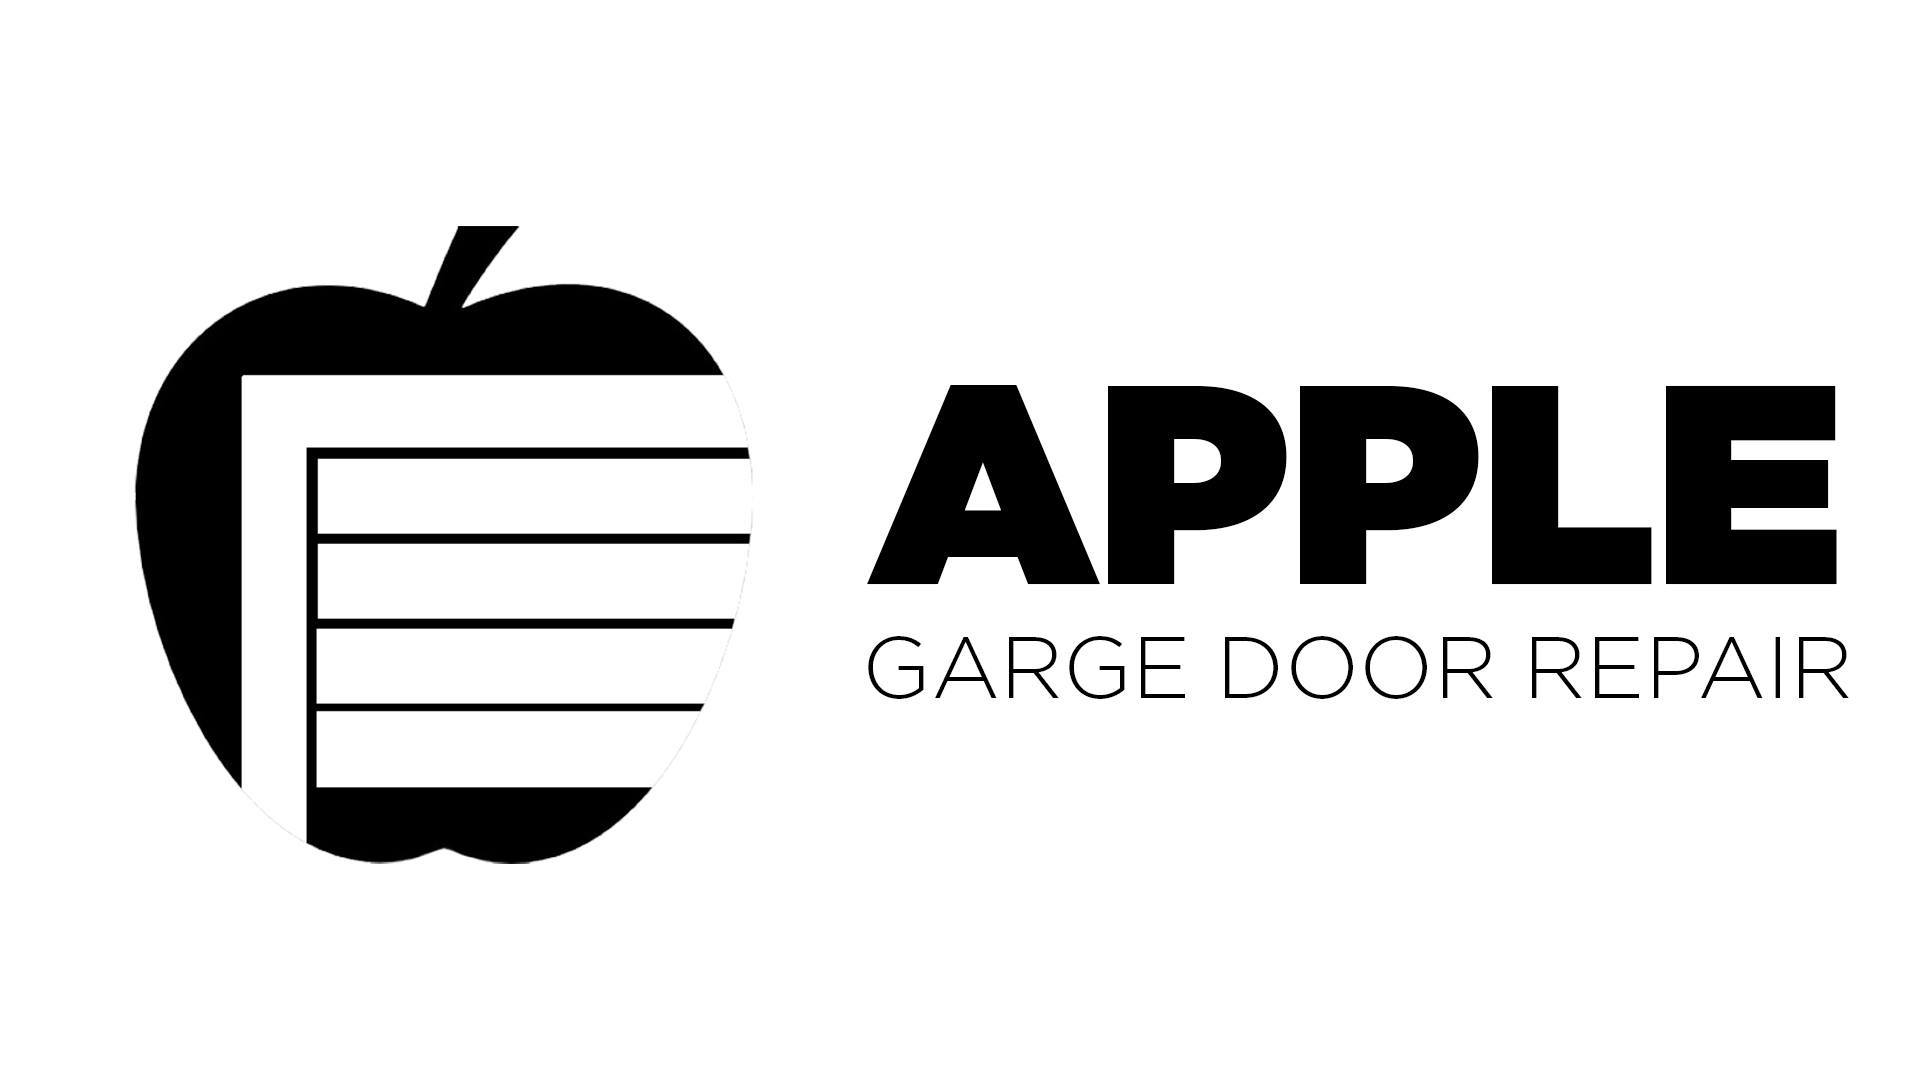 Company logo of Apple Garage Door Repair